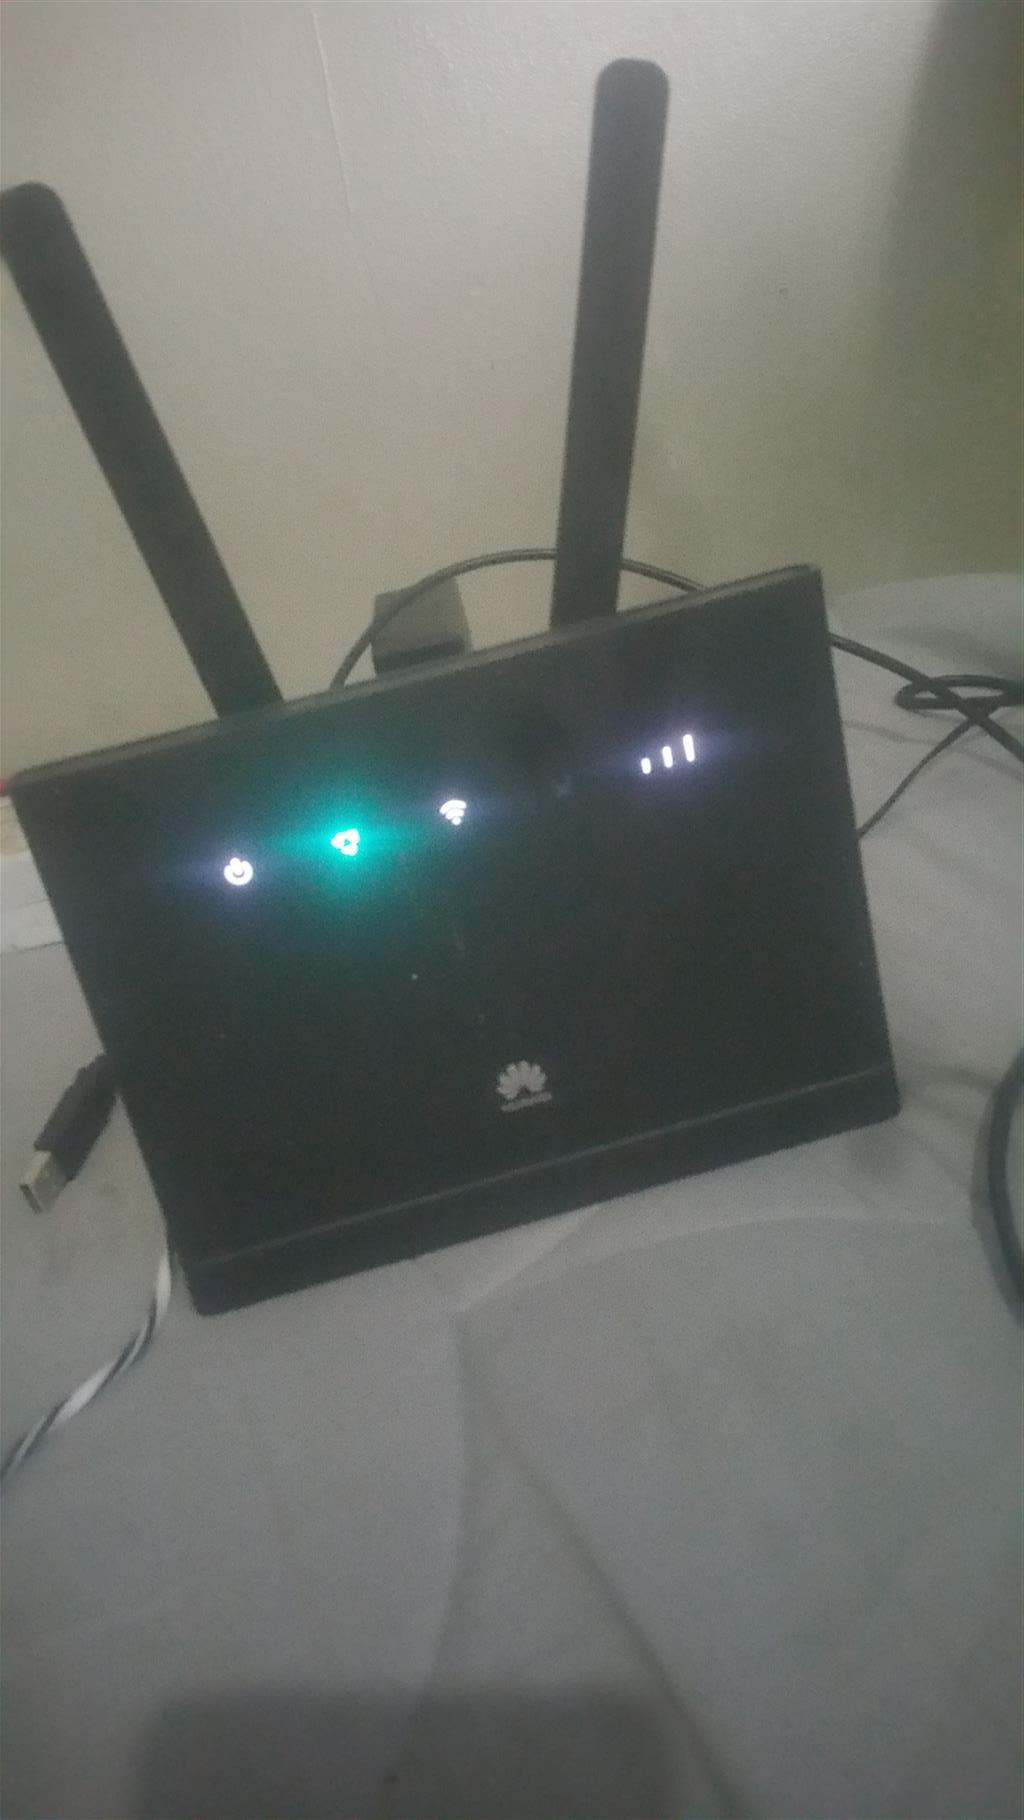 Huawei b315 wifi router